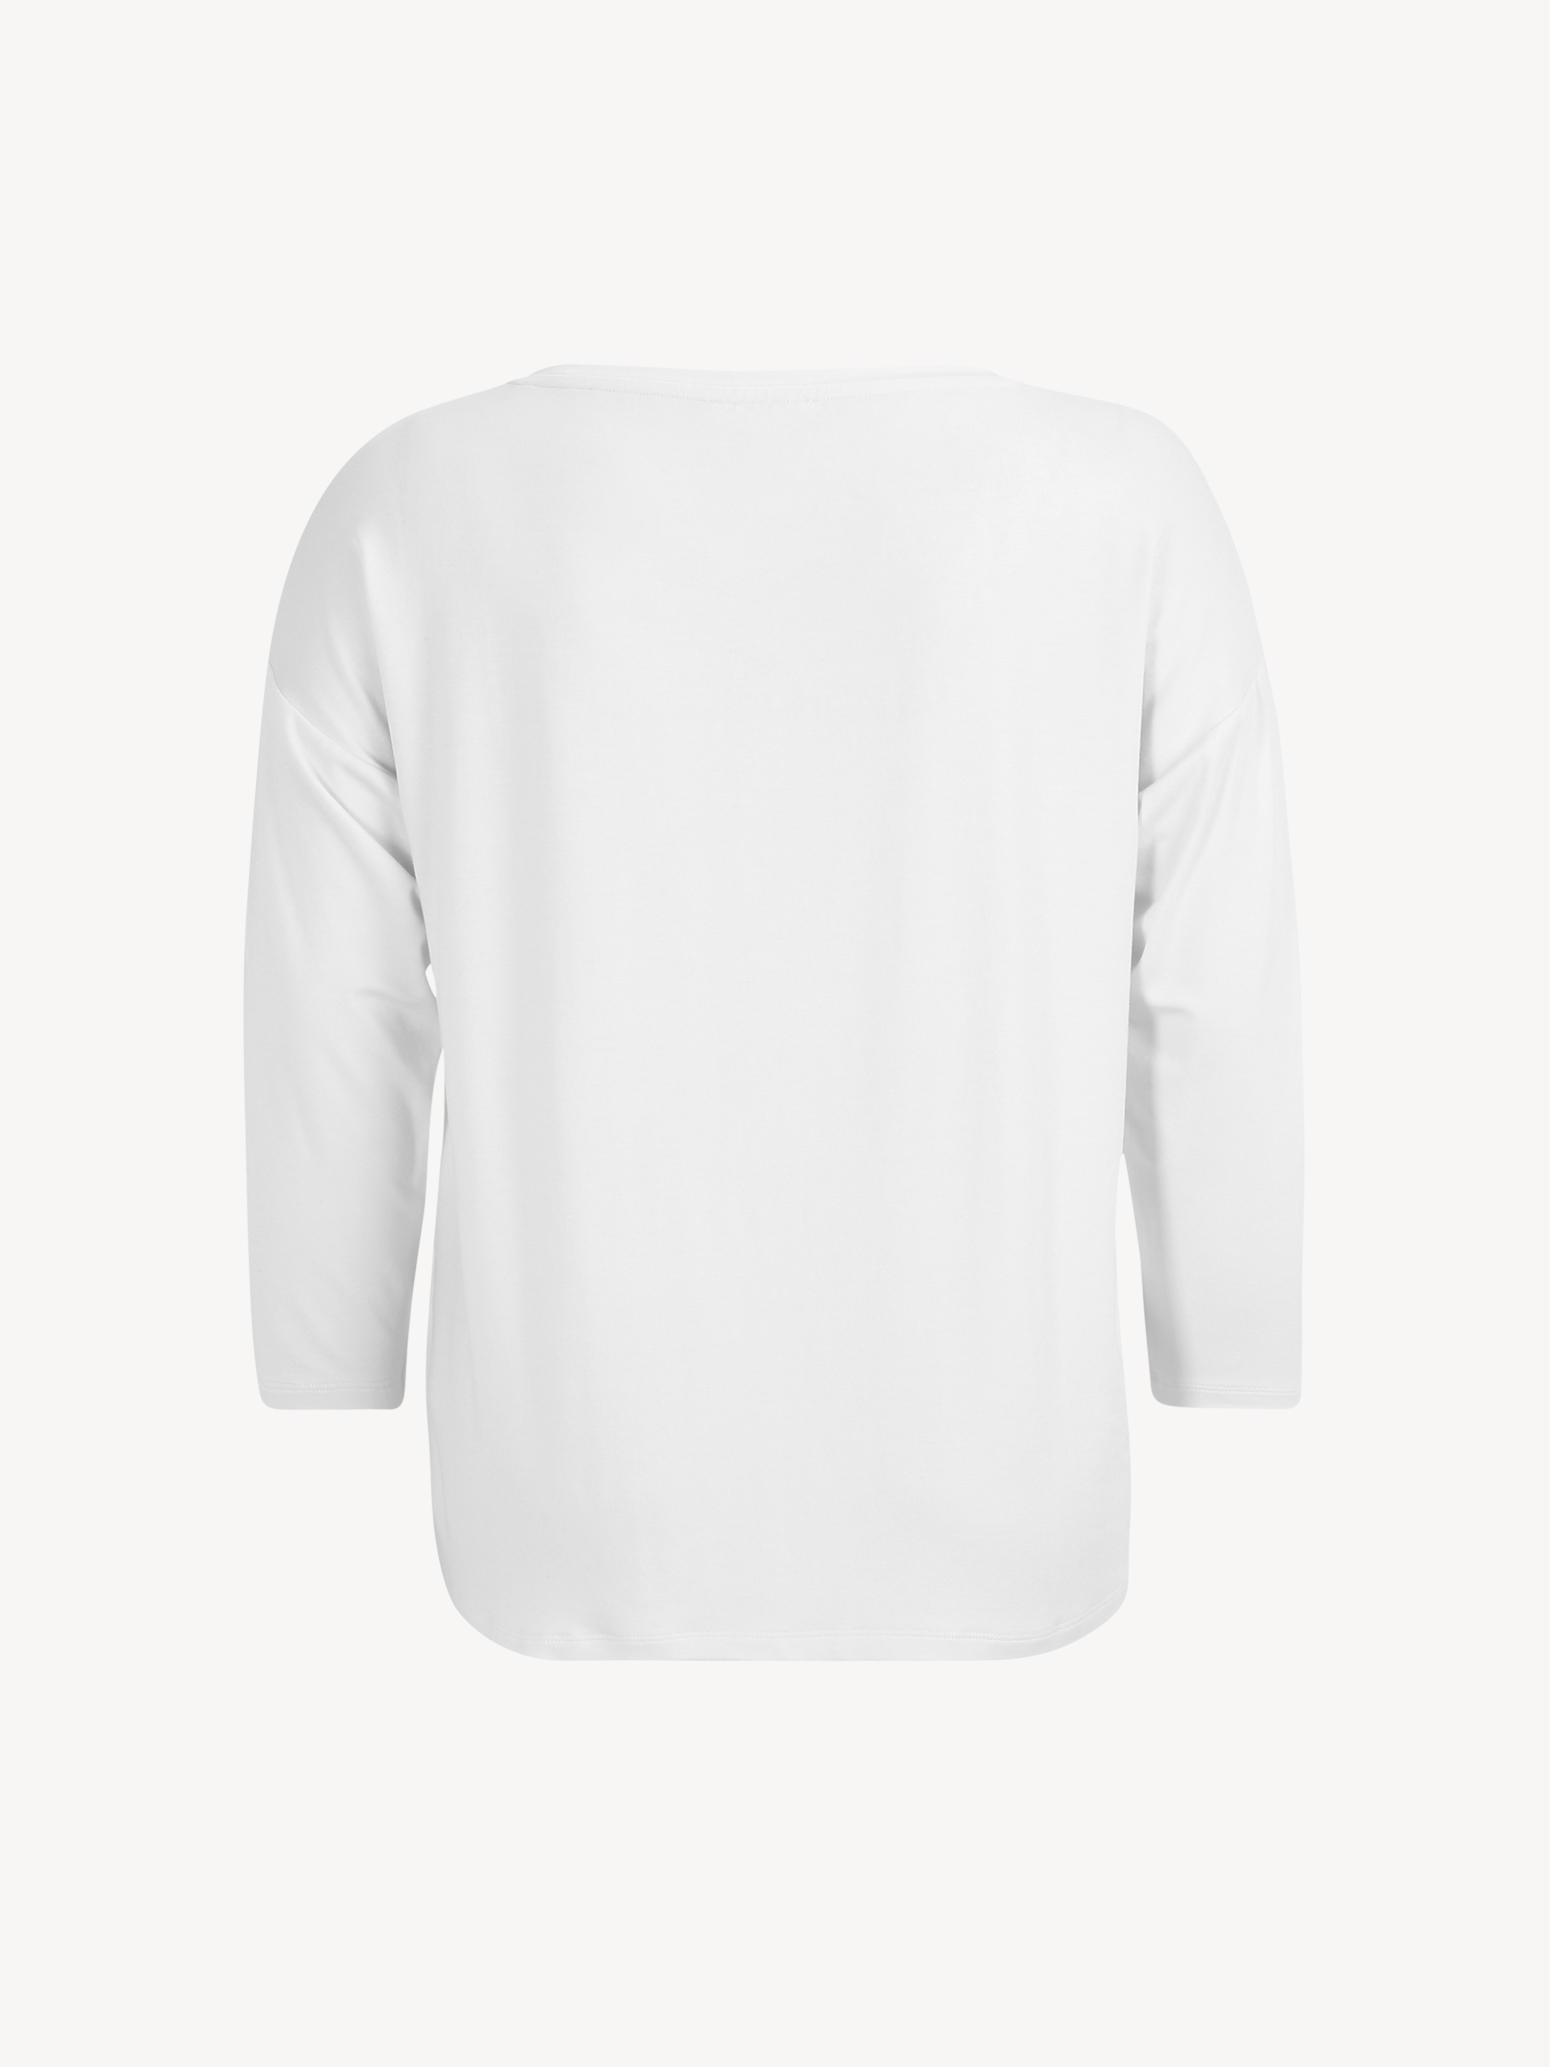 Langarmshirt - weiß TAW0372-10001: Tamaris Shirts & Tops online kaufen!